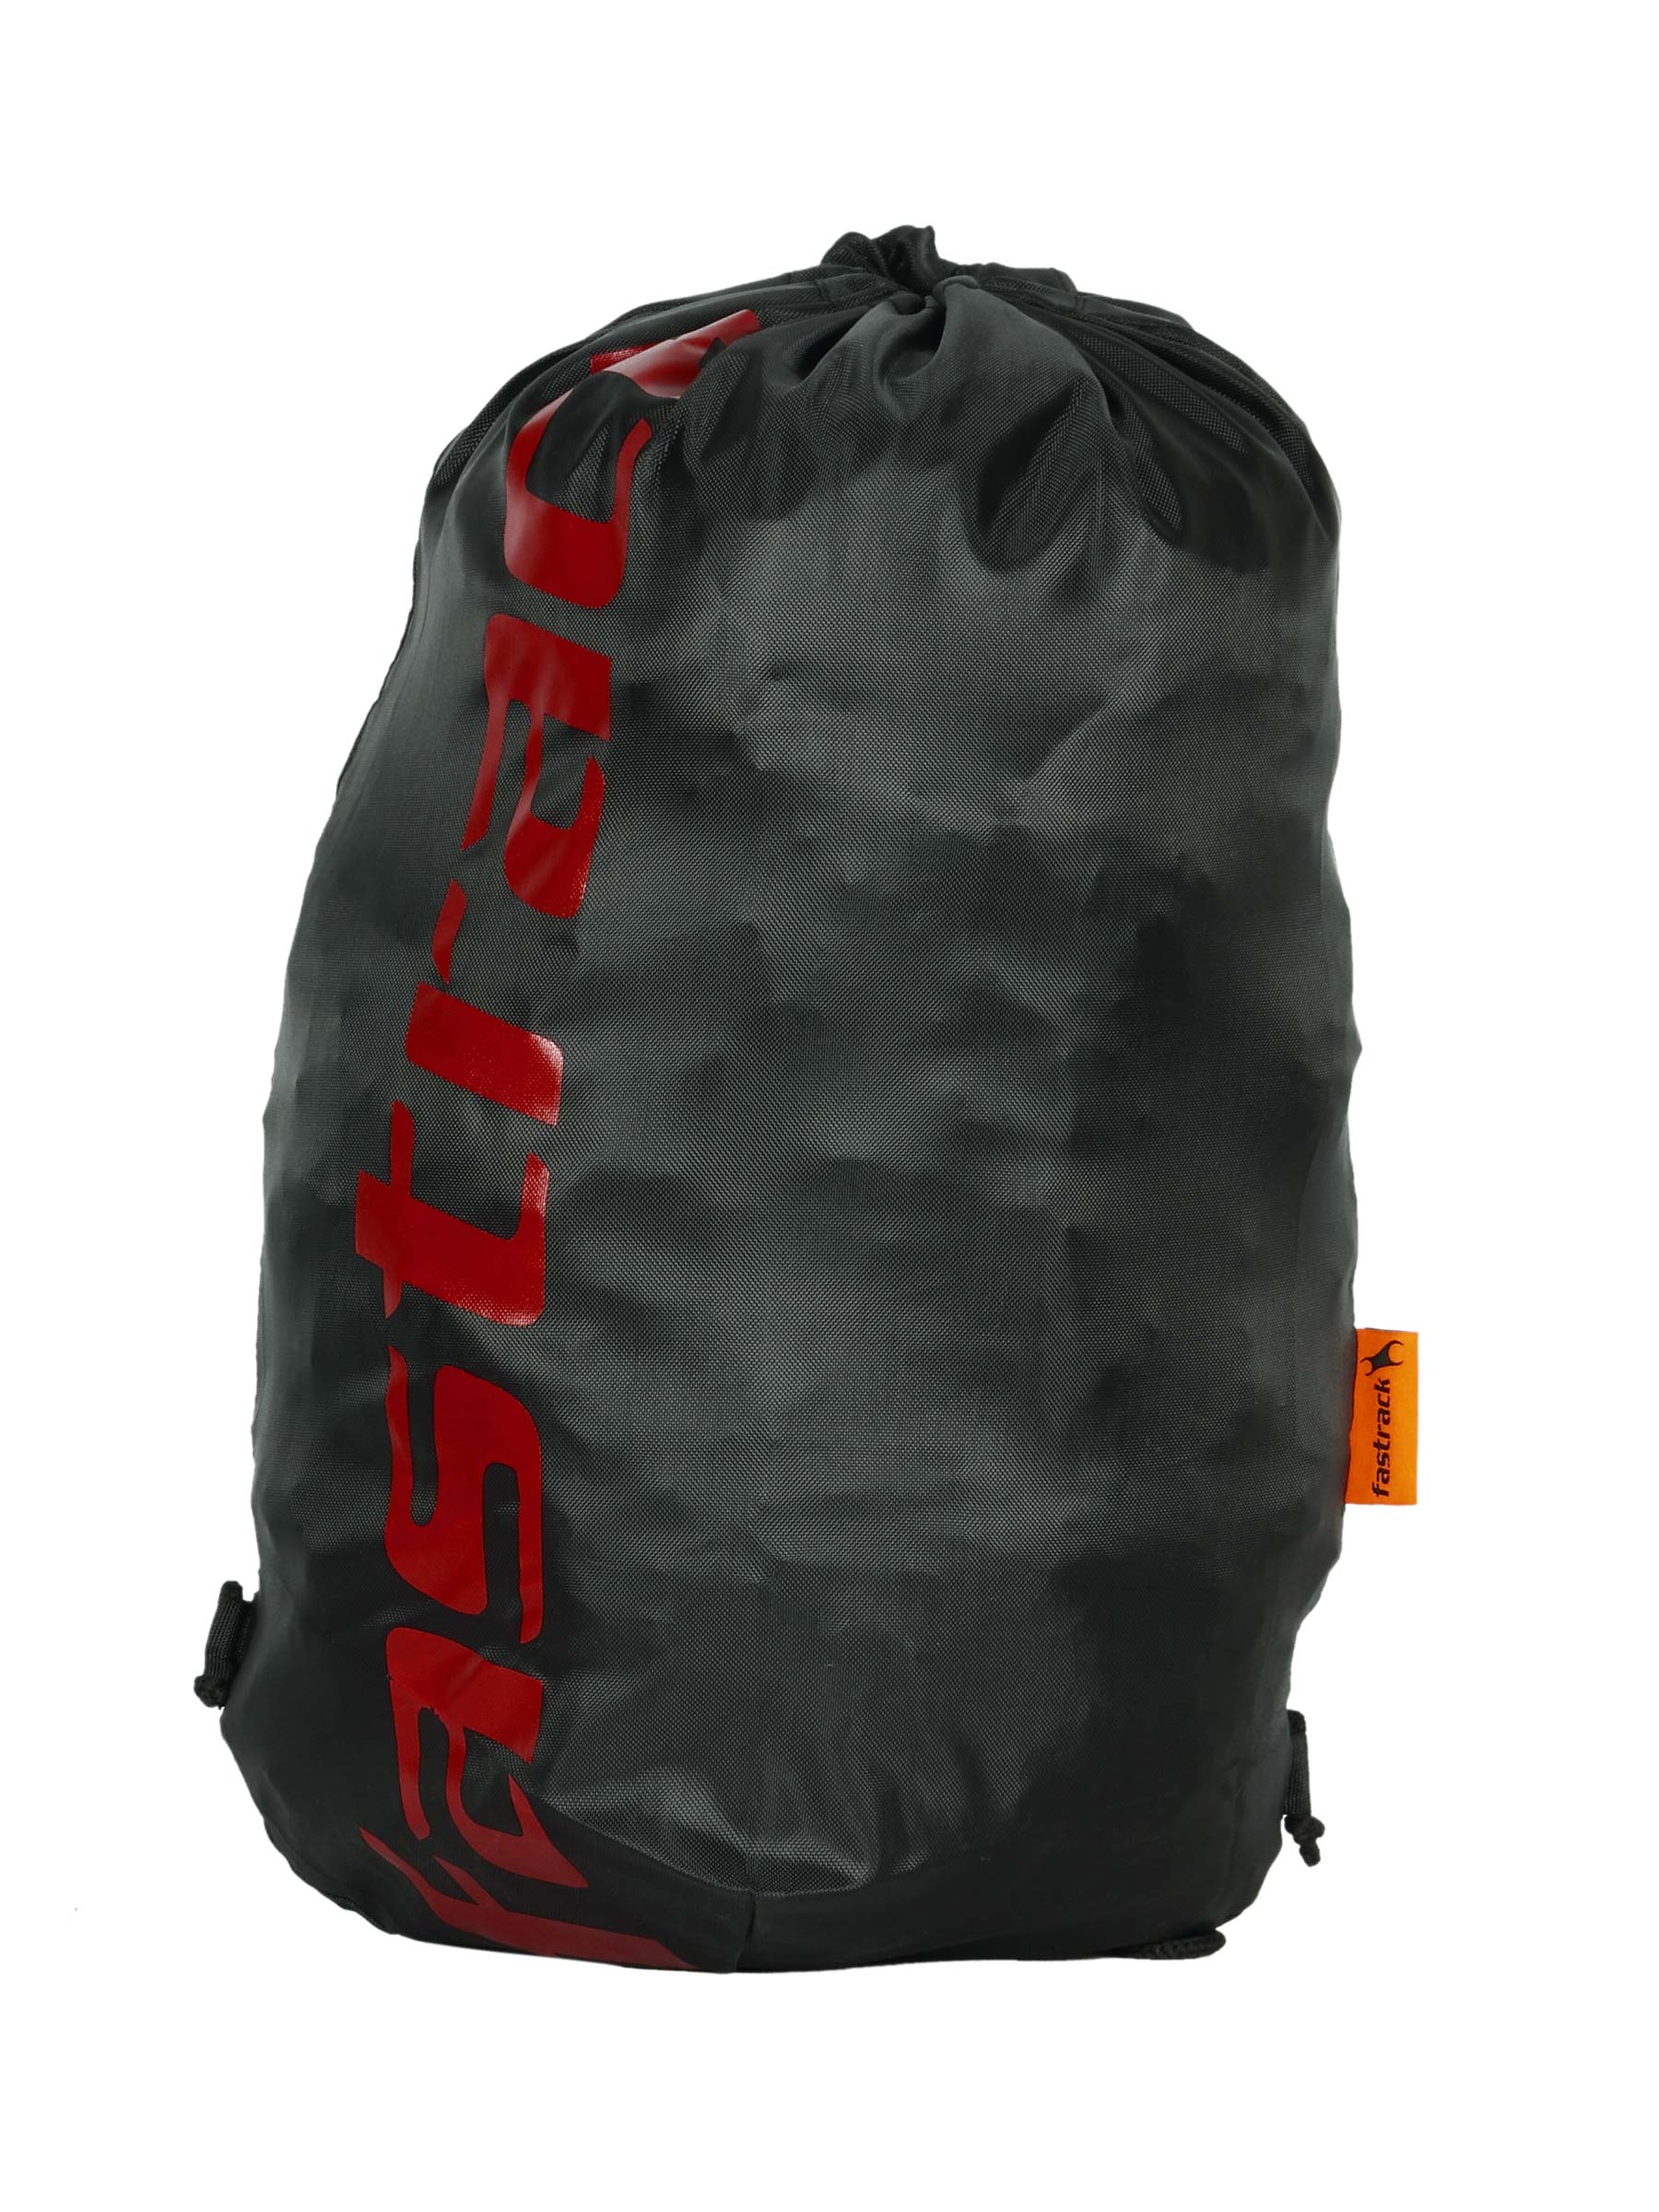 Fastrack Unisex Black Red Printed Sling Bag